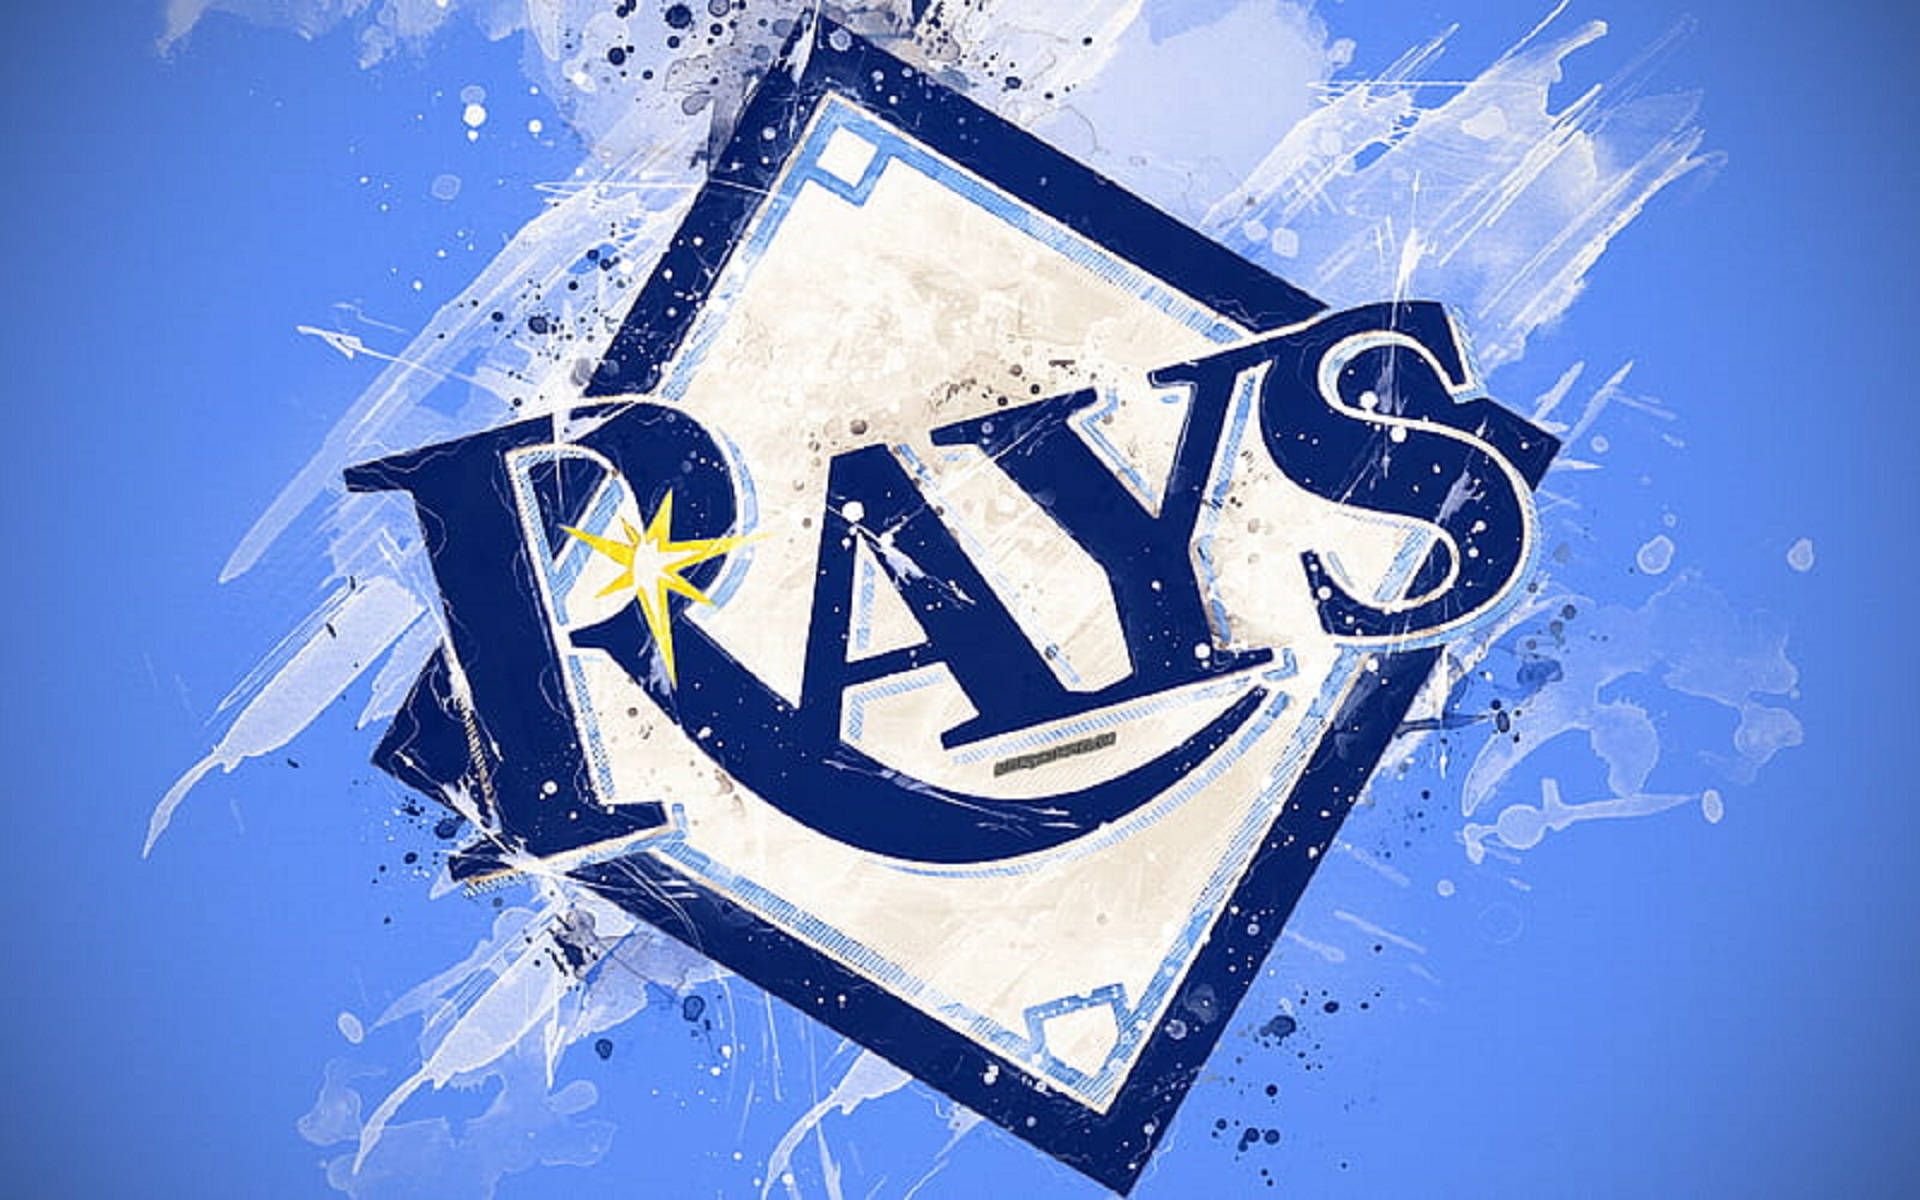 Tampa Bay Rays Abstract Logo Wallpaper